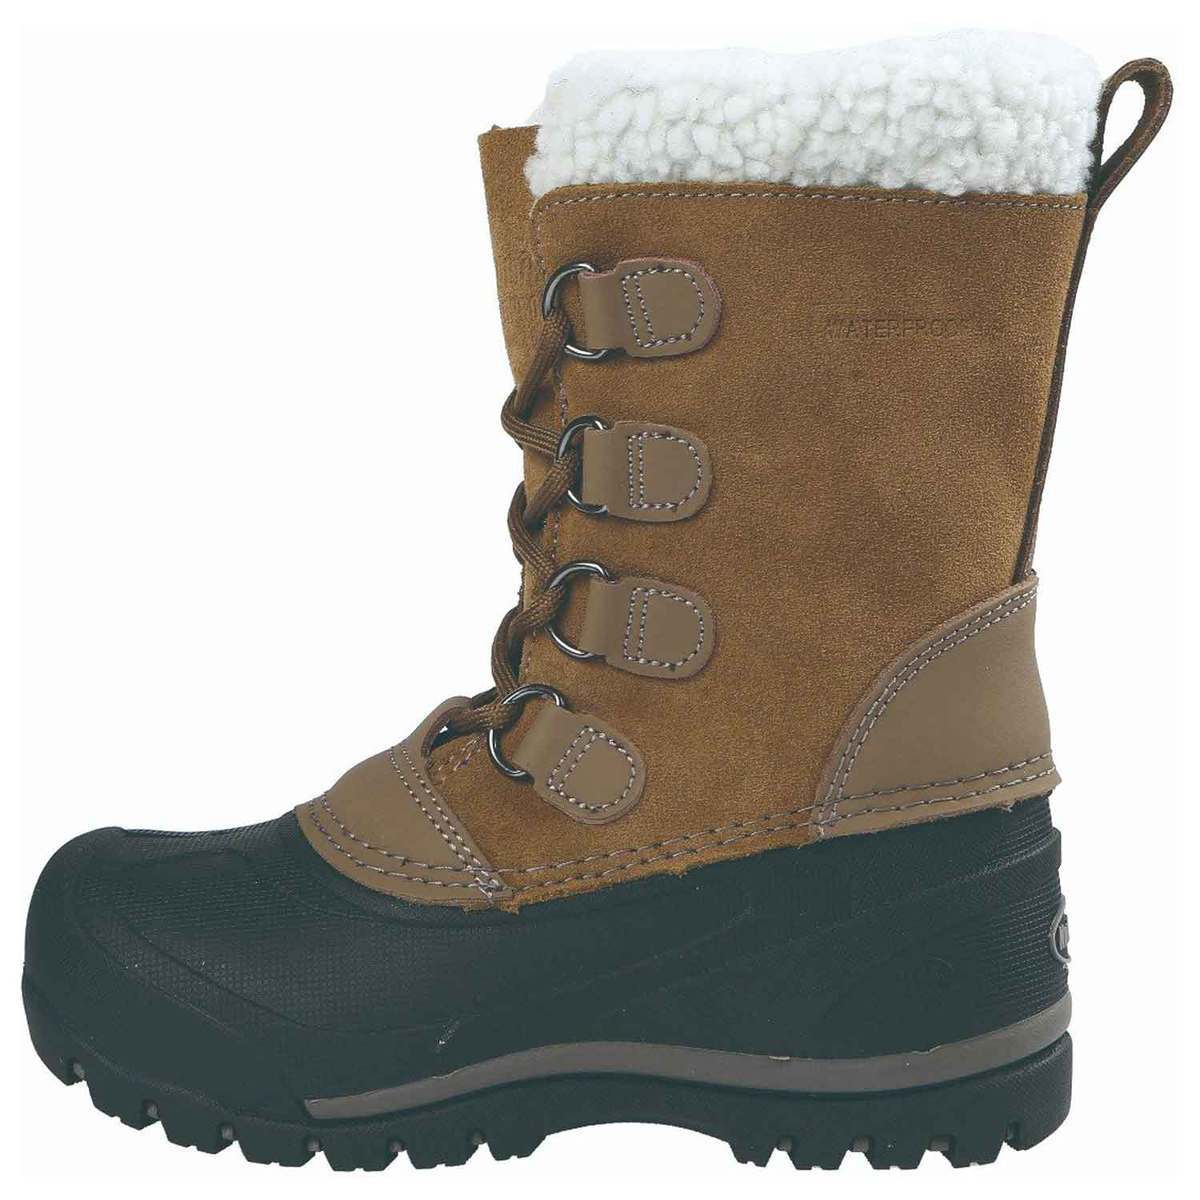 Negen Omgekeerde Wrok Northside Youth Back Country Waterproof Winter Boots - Sand - Size 4 - Sand  4 | Sportsman's Warehouse